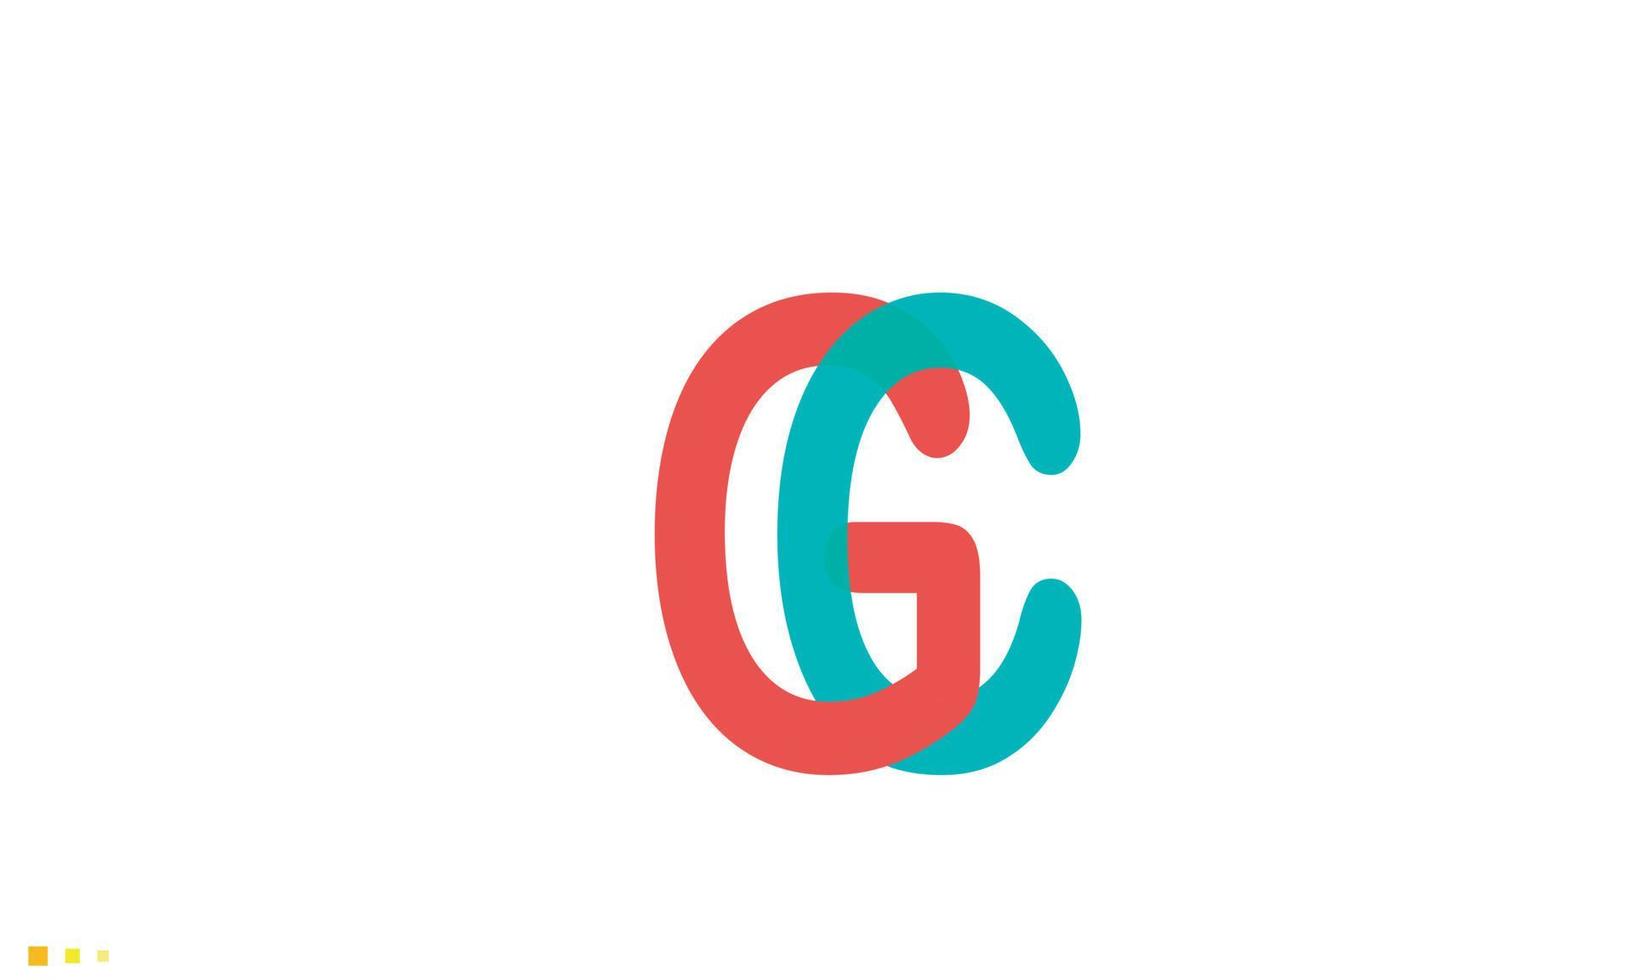 letras do alfabeto iniciais monograma logotipo gc, cg, g e c vetor